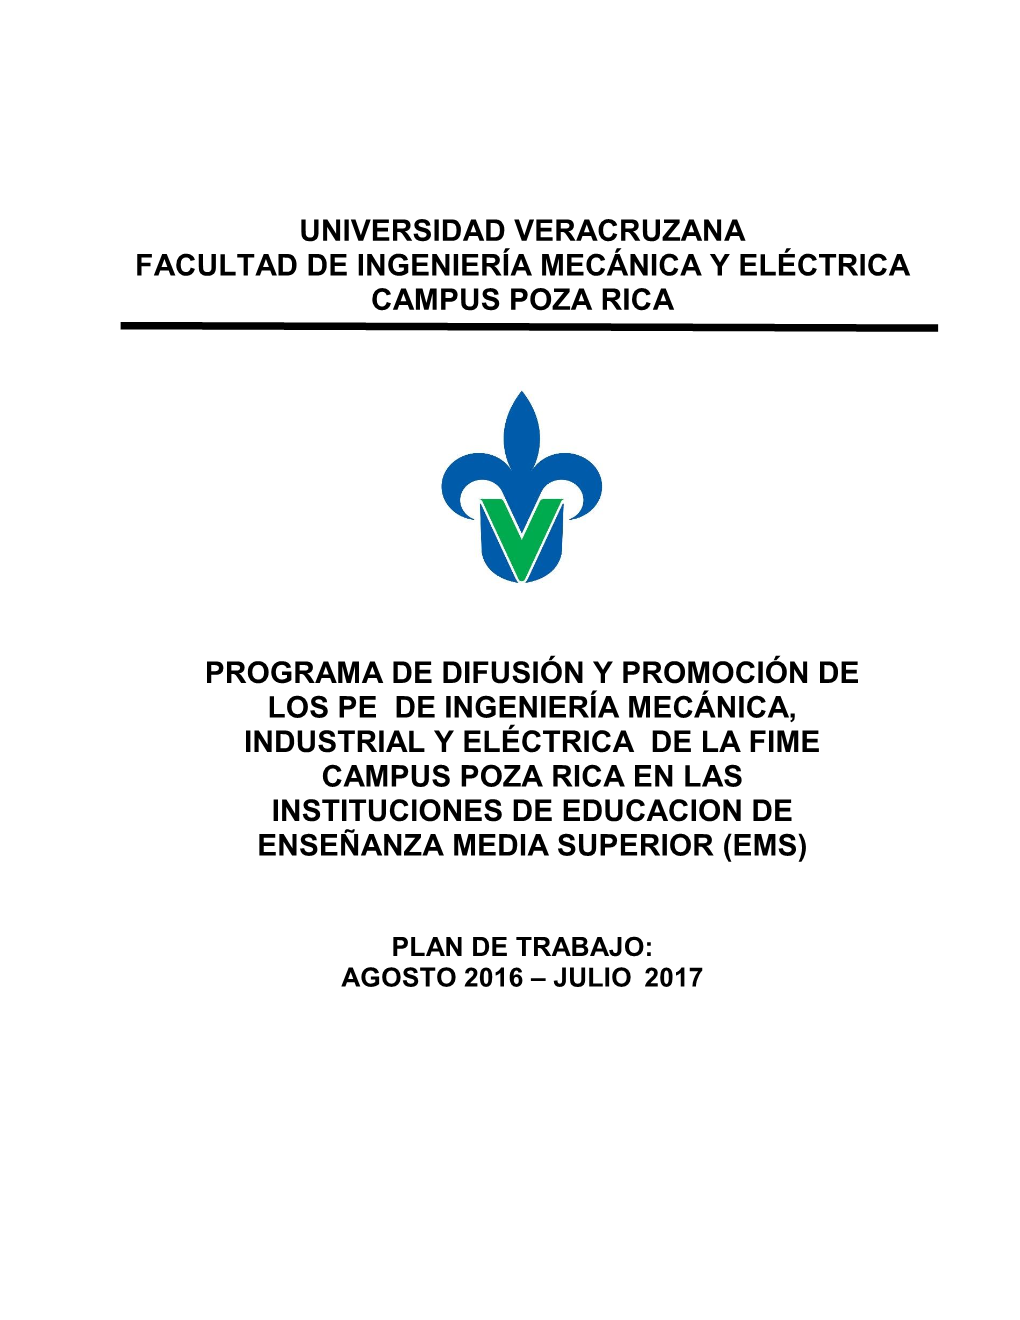 Universidad Veracruzana Facultad De Ingeniería Mecánica Y Eléctrica Campus Poza Rica